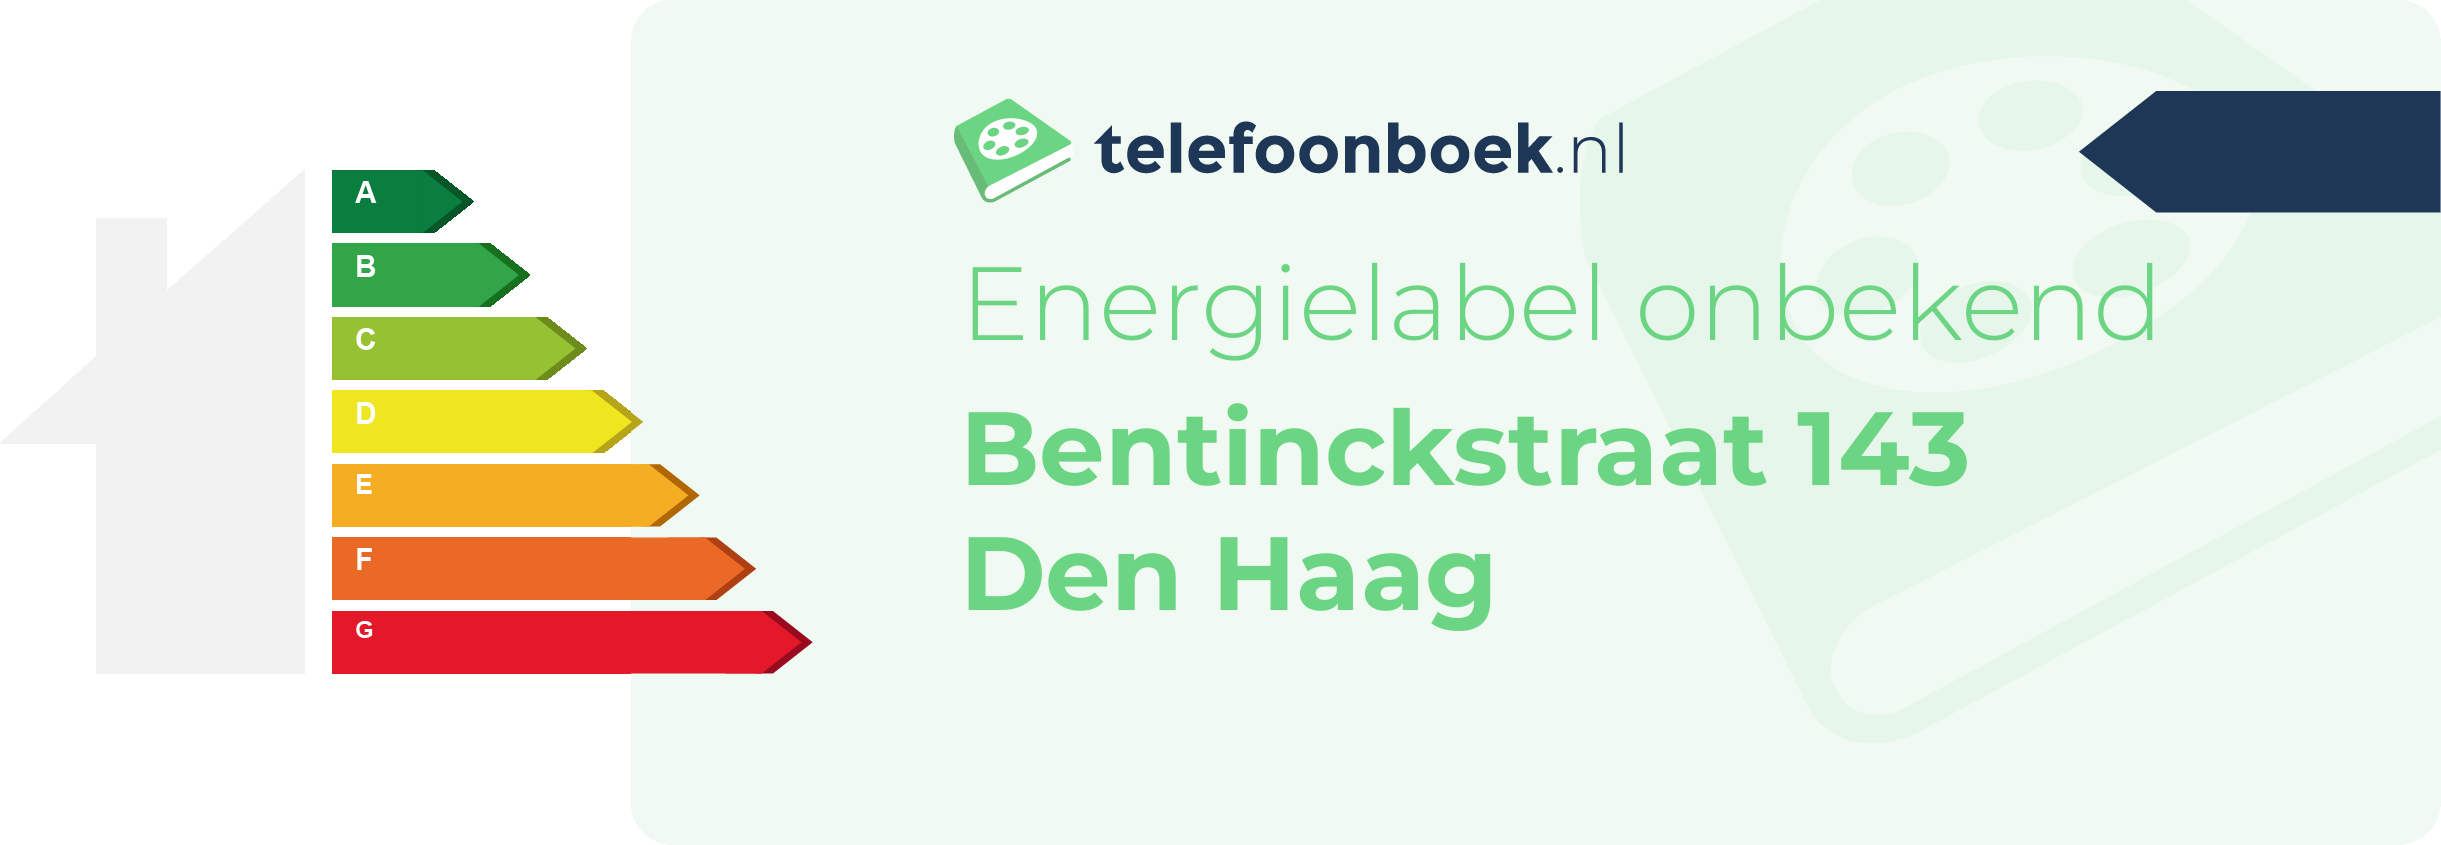 Energielabel Bentinckstraat 143 Den Haag